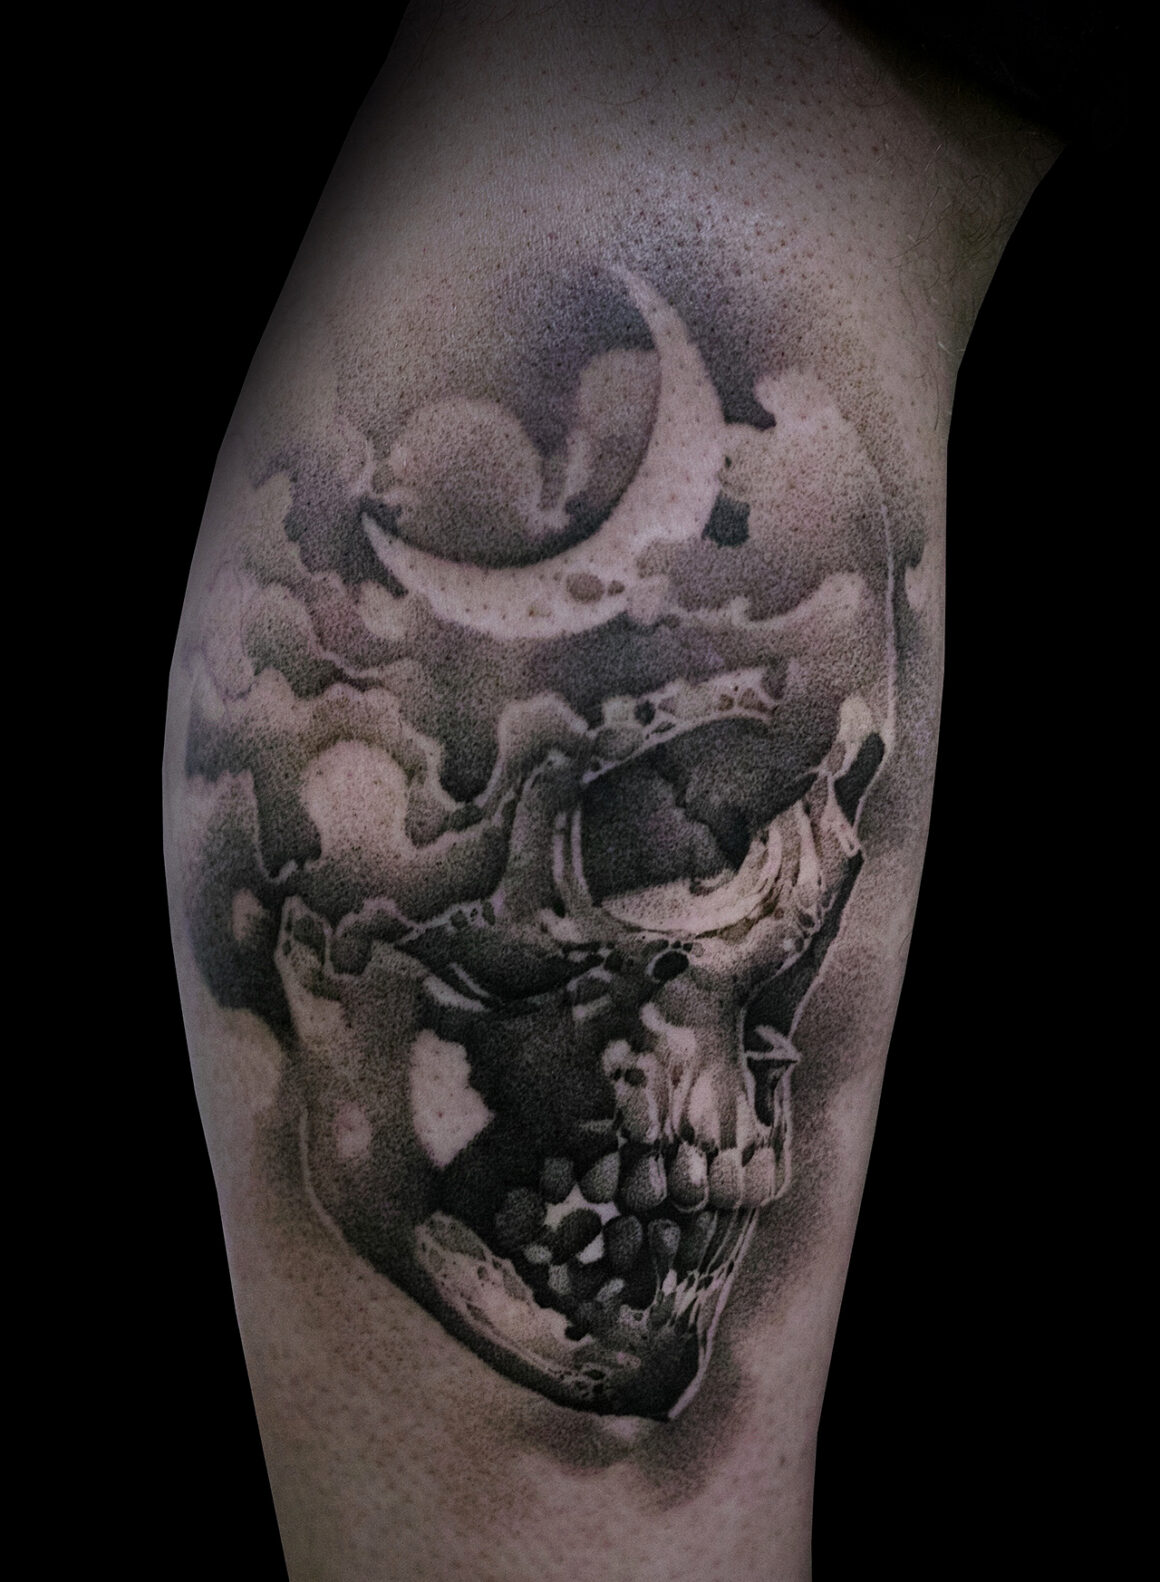 Tattoo by Silvio Vukadin, @silviovukadin